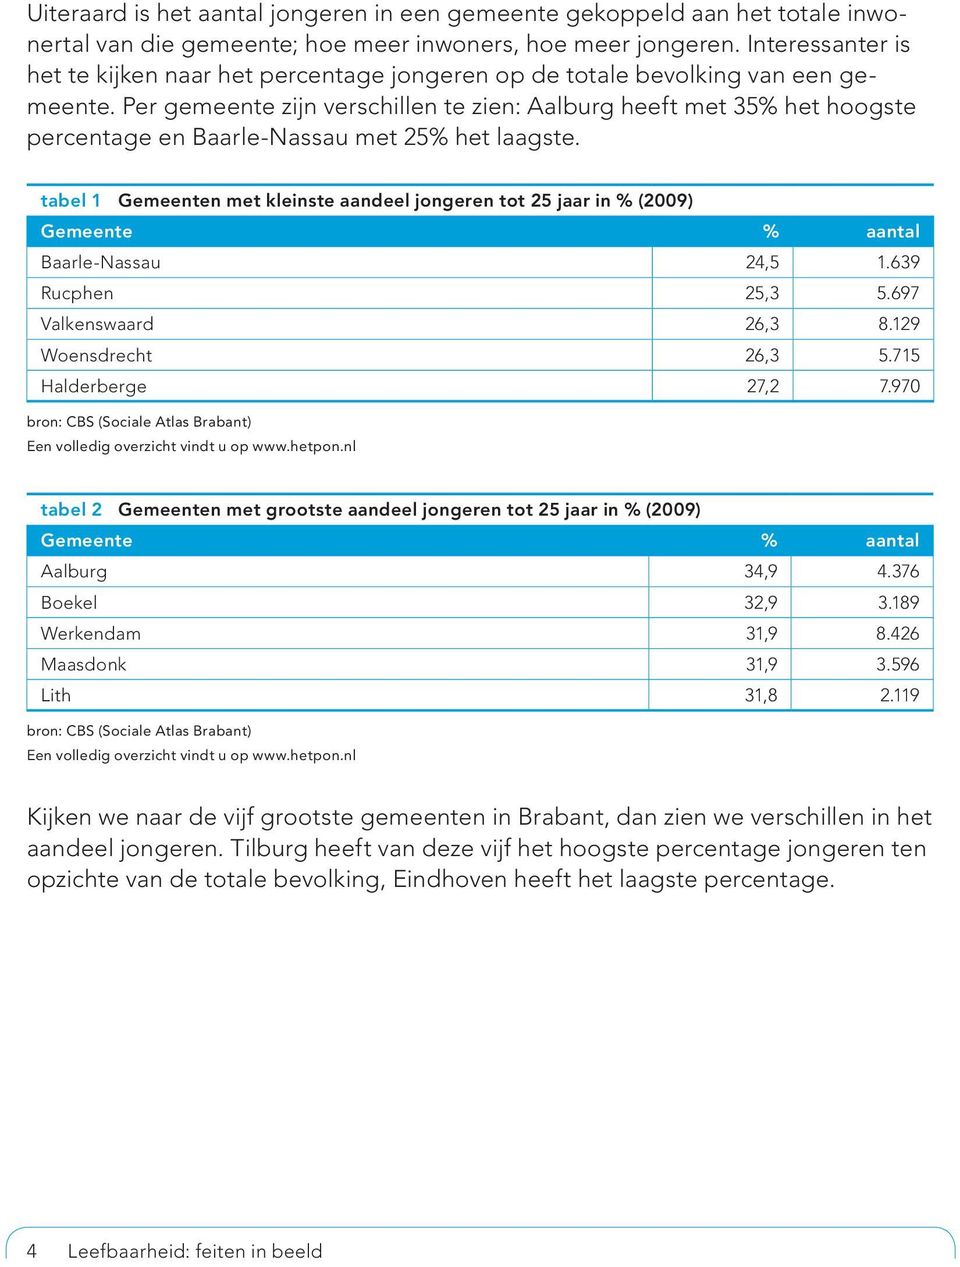 Per gemeente zijn verschillen te zien: Aalburg heeft met 35% het hoogste percentage en Baarle-Nassau met 25% het laagste.